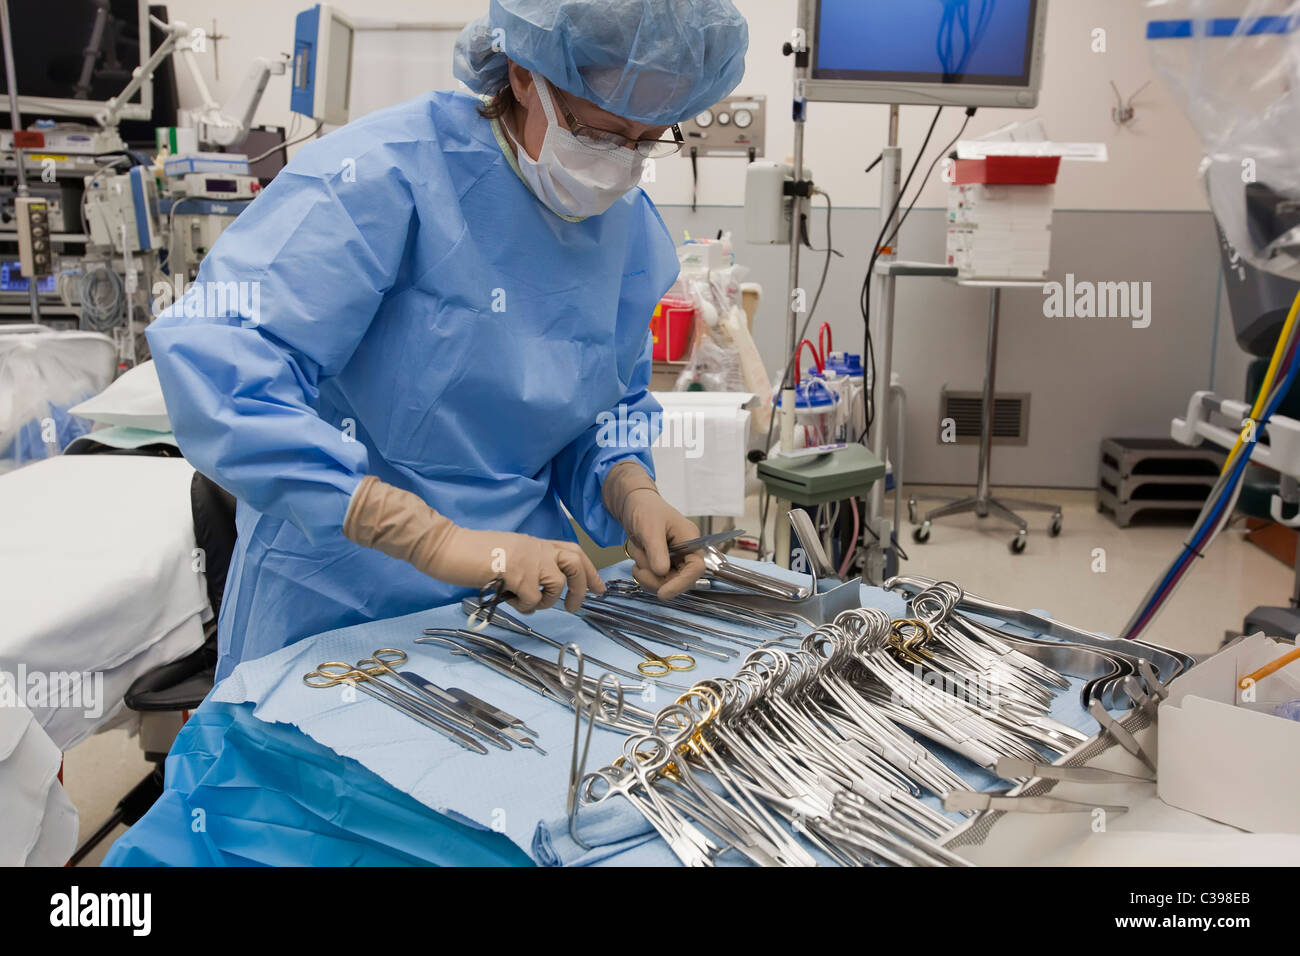 Detroit, Michigan - un infermiere prepara gli strumenti chirurgici per un funzionamento a San Giovanni ospedale. Foto Stock